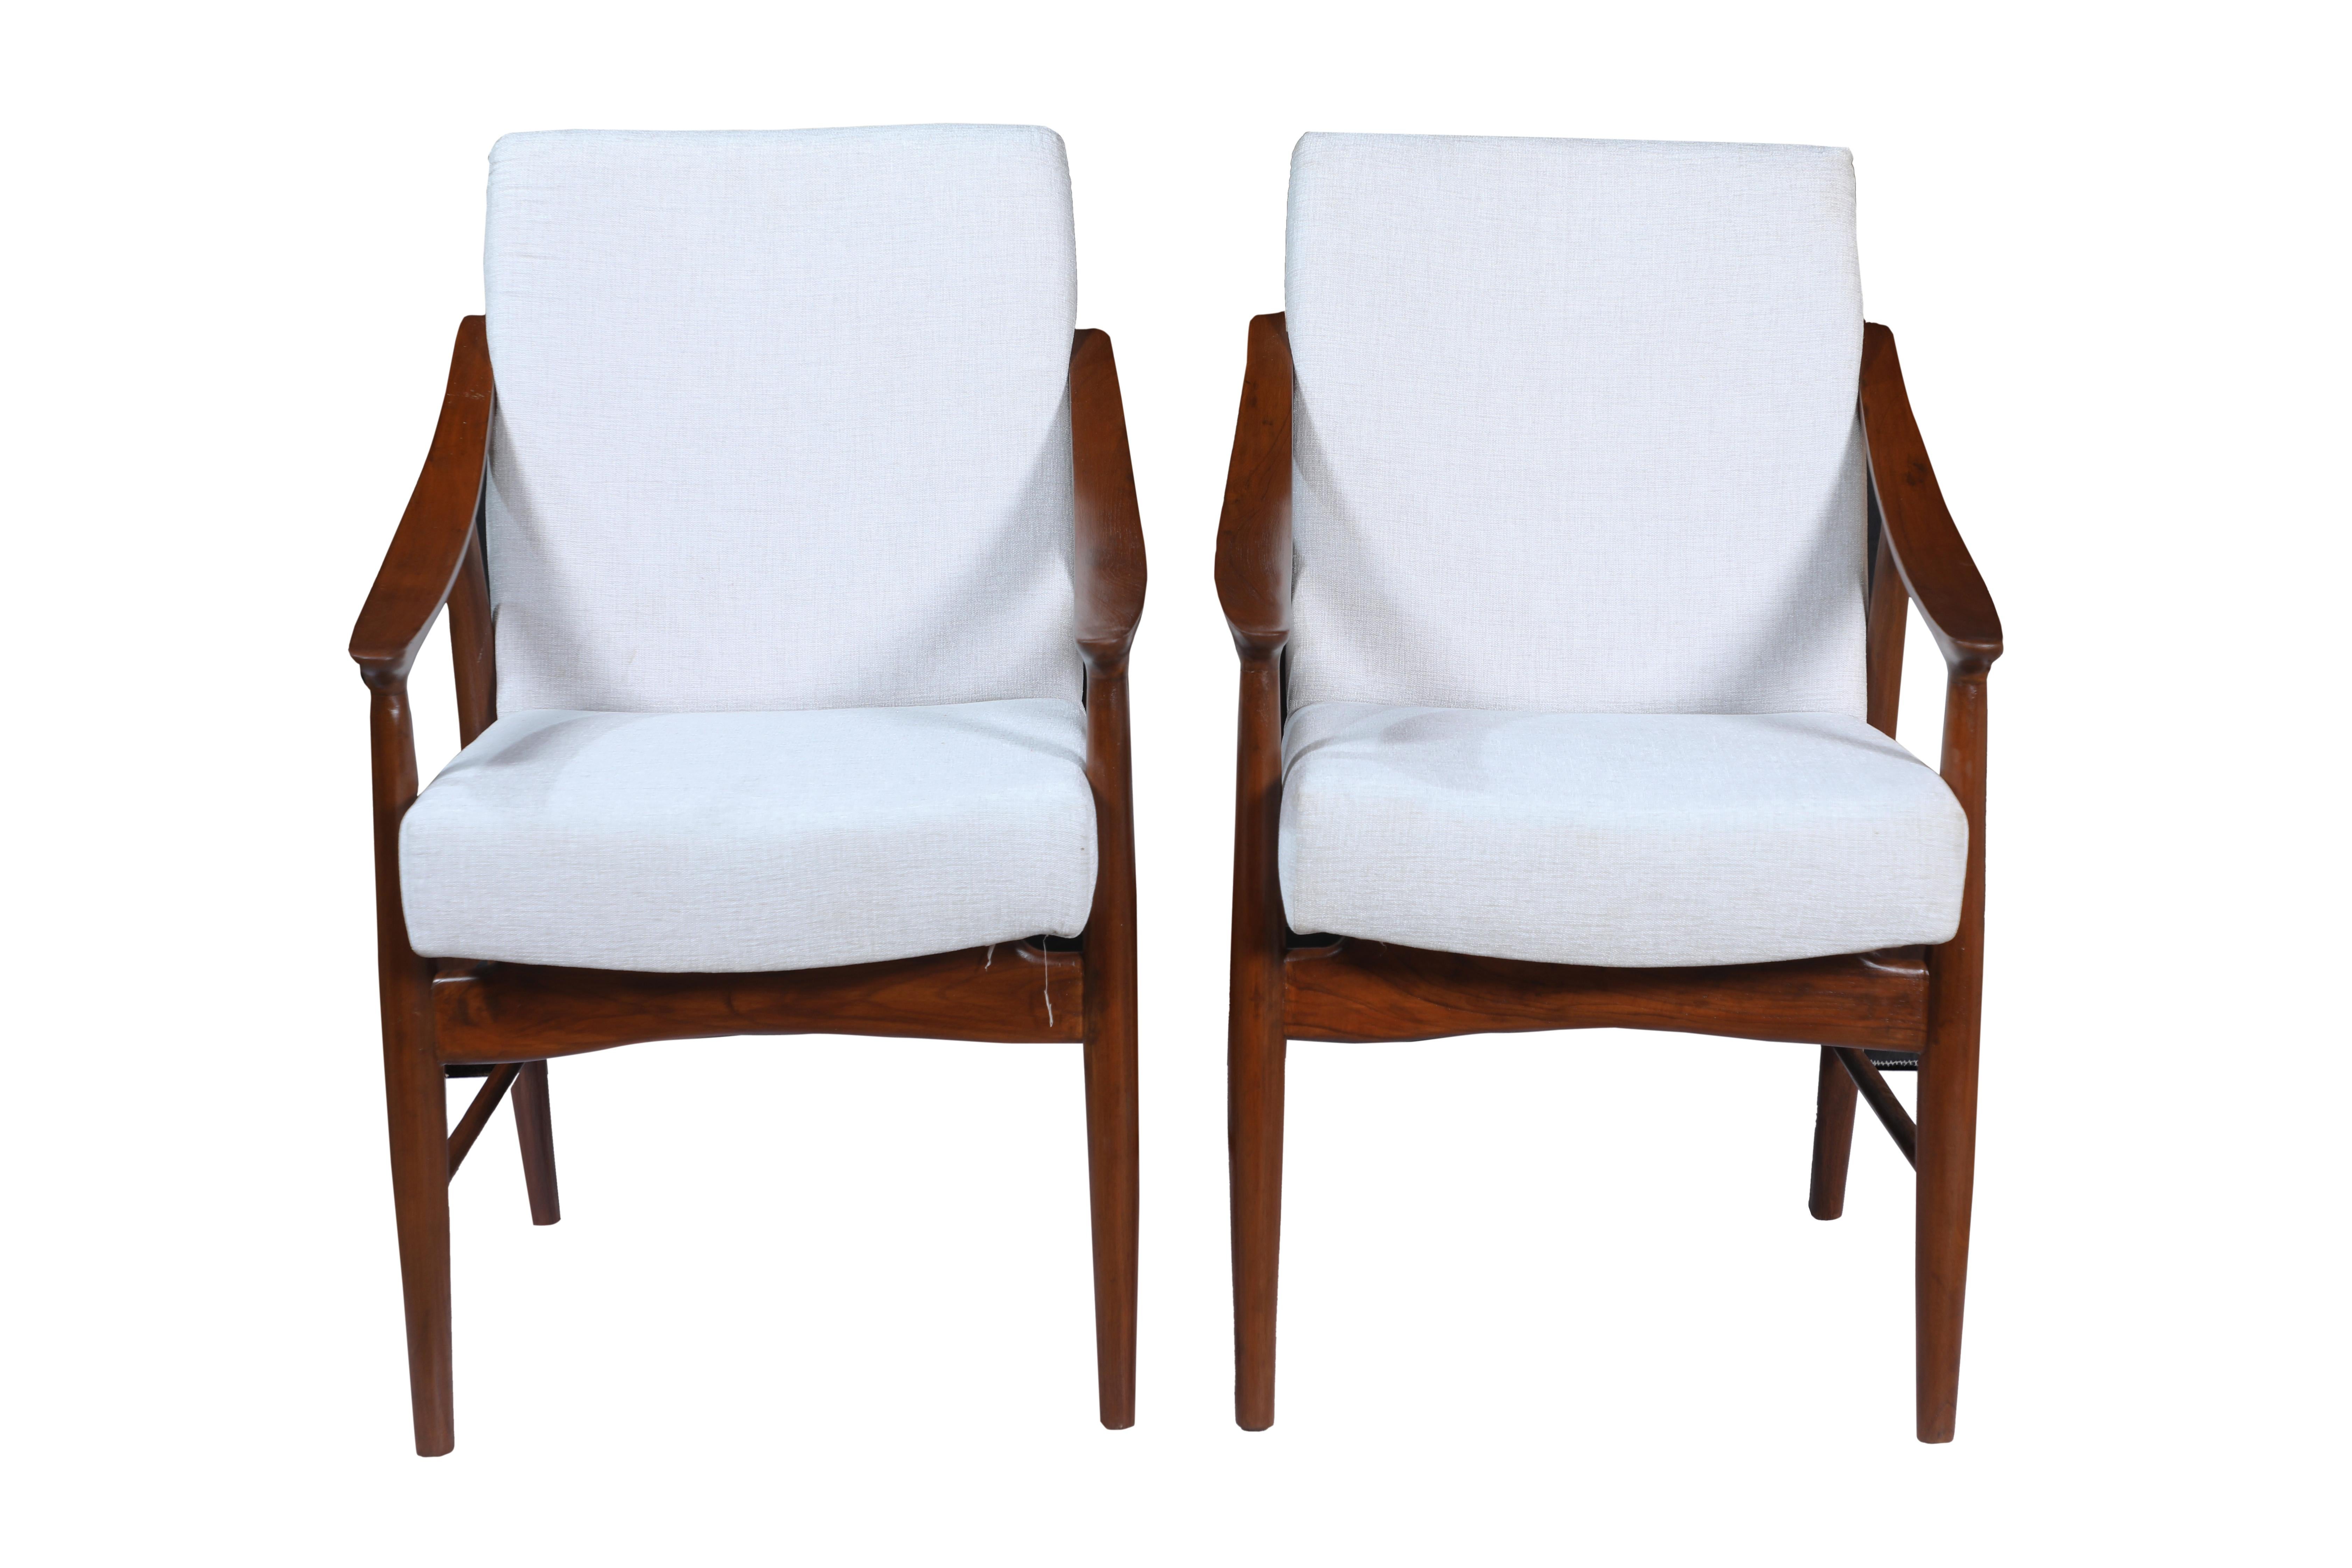 A  Belle paire de fauteuils d'appoint danois en teck, de style moderne du milieu du siècle.  Idéal pour un bureau, un salon ou une salle de séjour.  Un joli balayage des bras les rend très confortables.  Ils ont été remis en état et retapissés dans